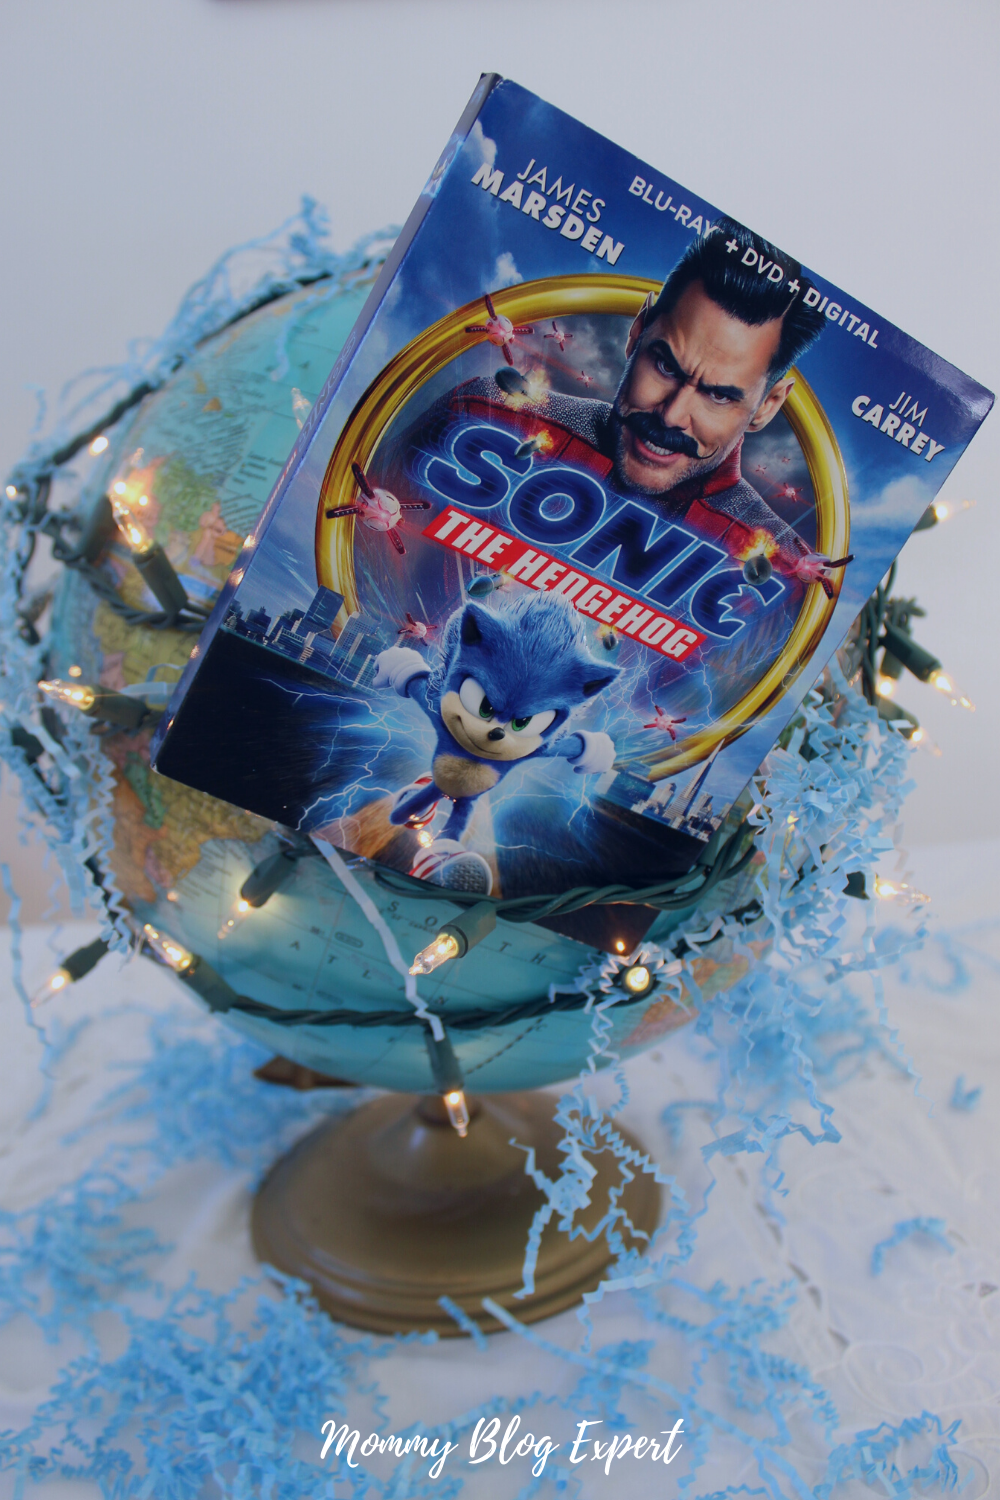  Sonic the Hedgehog (Blu-ray + DVD + Digital) : Tika